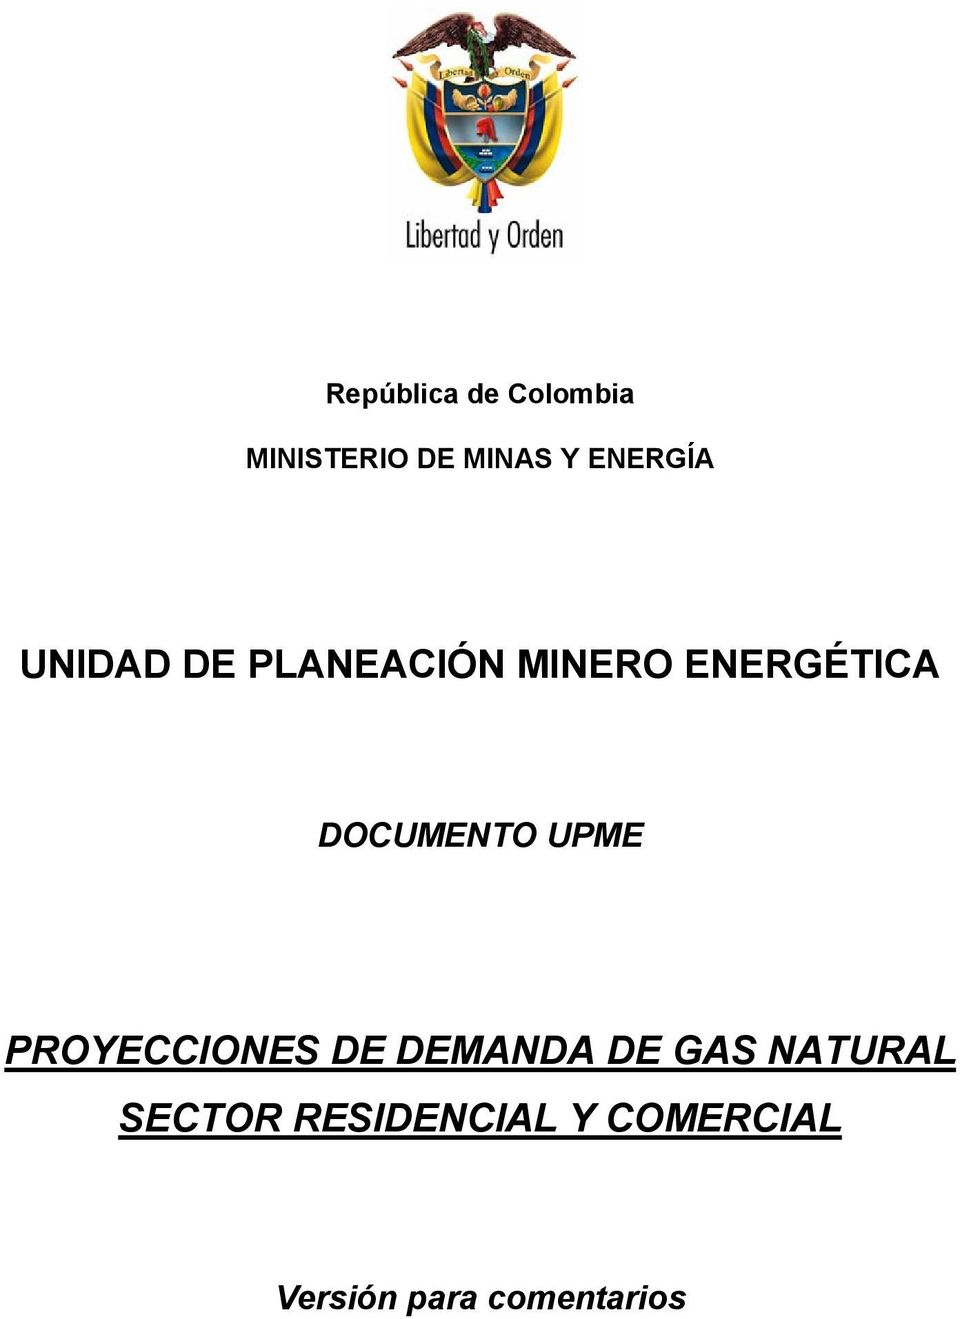 PROYECCIONES DE DEMANDA DE GAS NATURAL